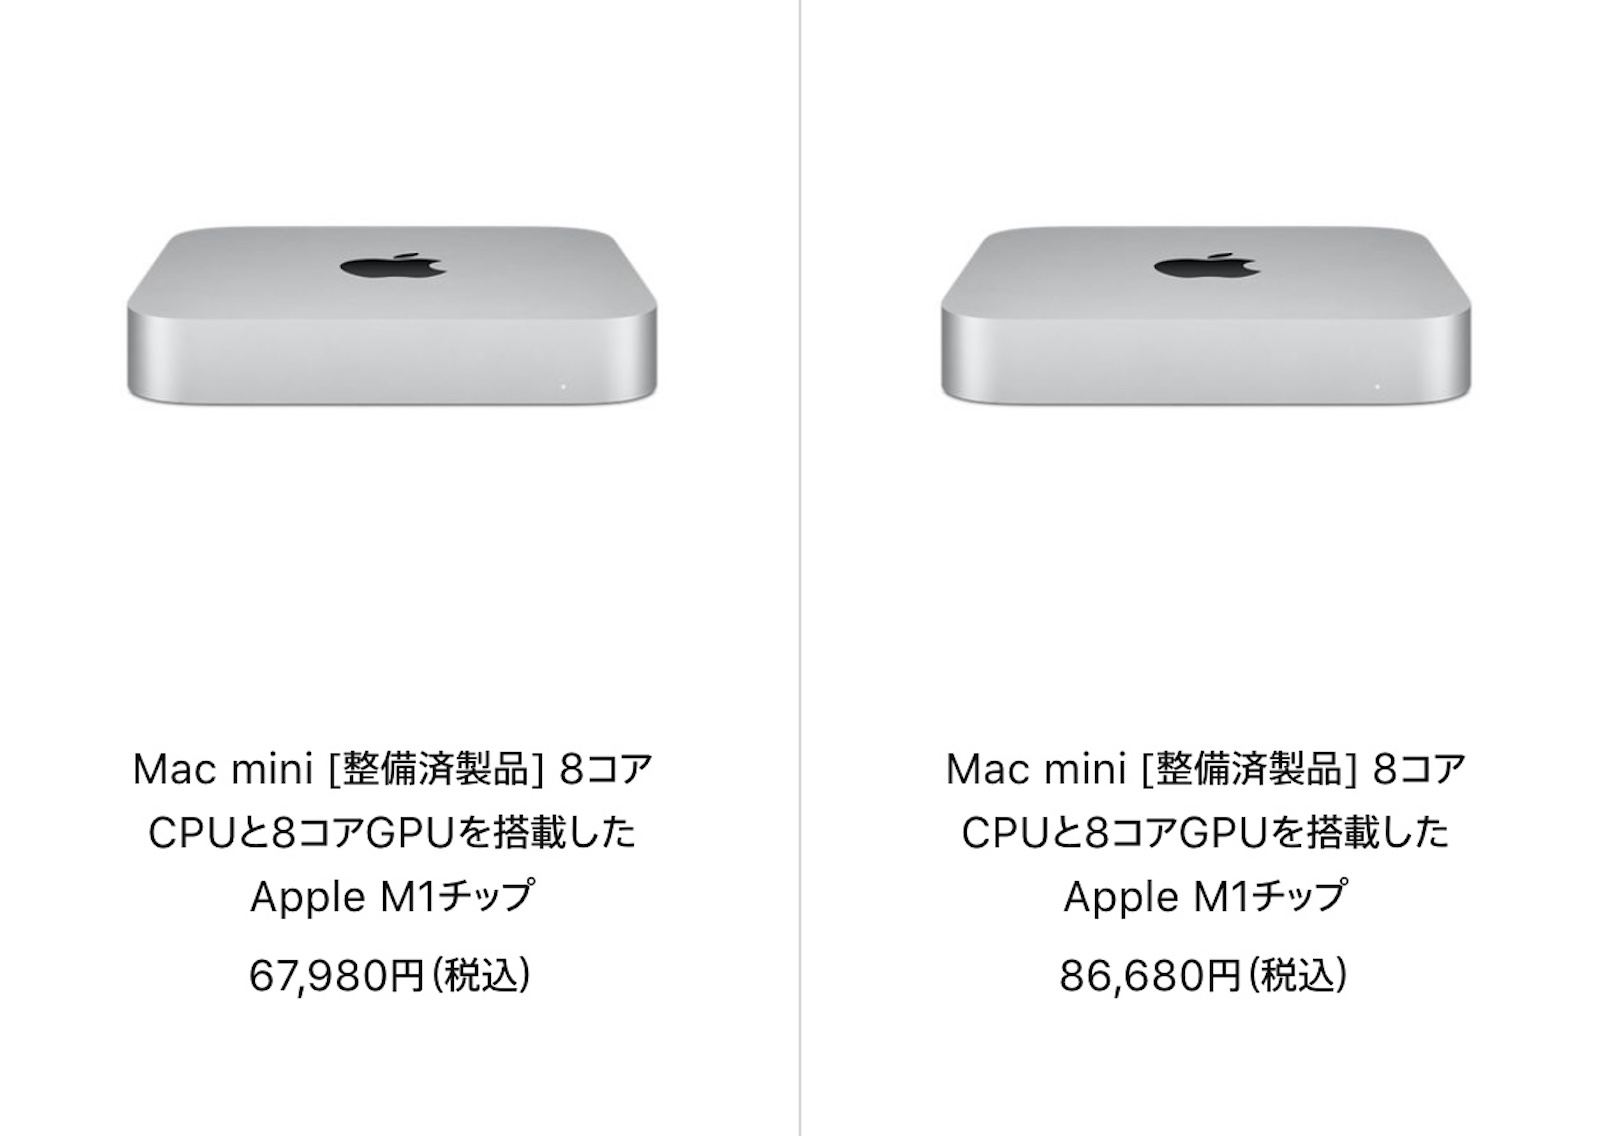 Apple M1 Mac mini 最新 - rehda.com